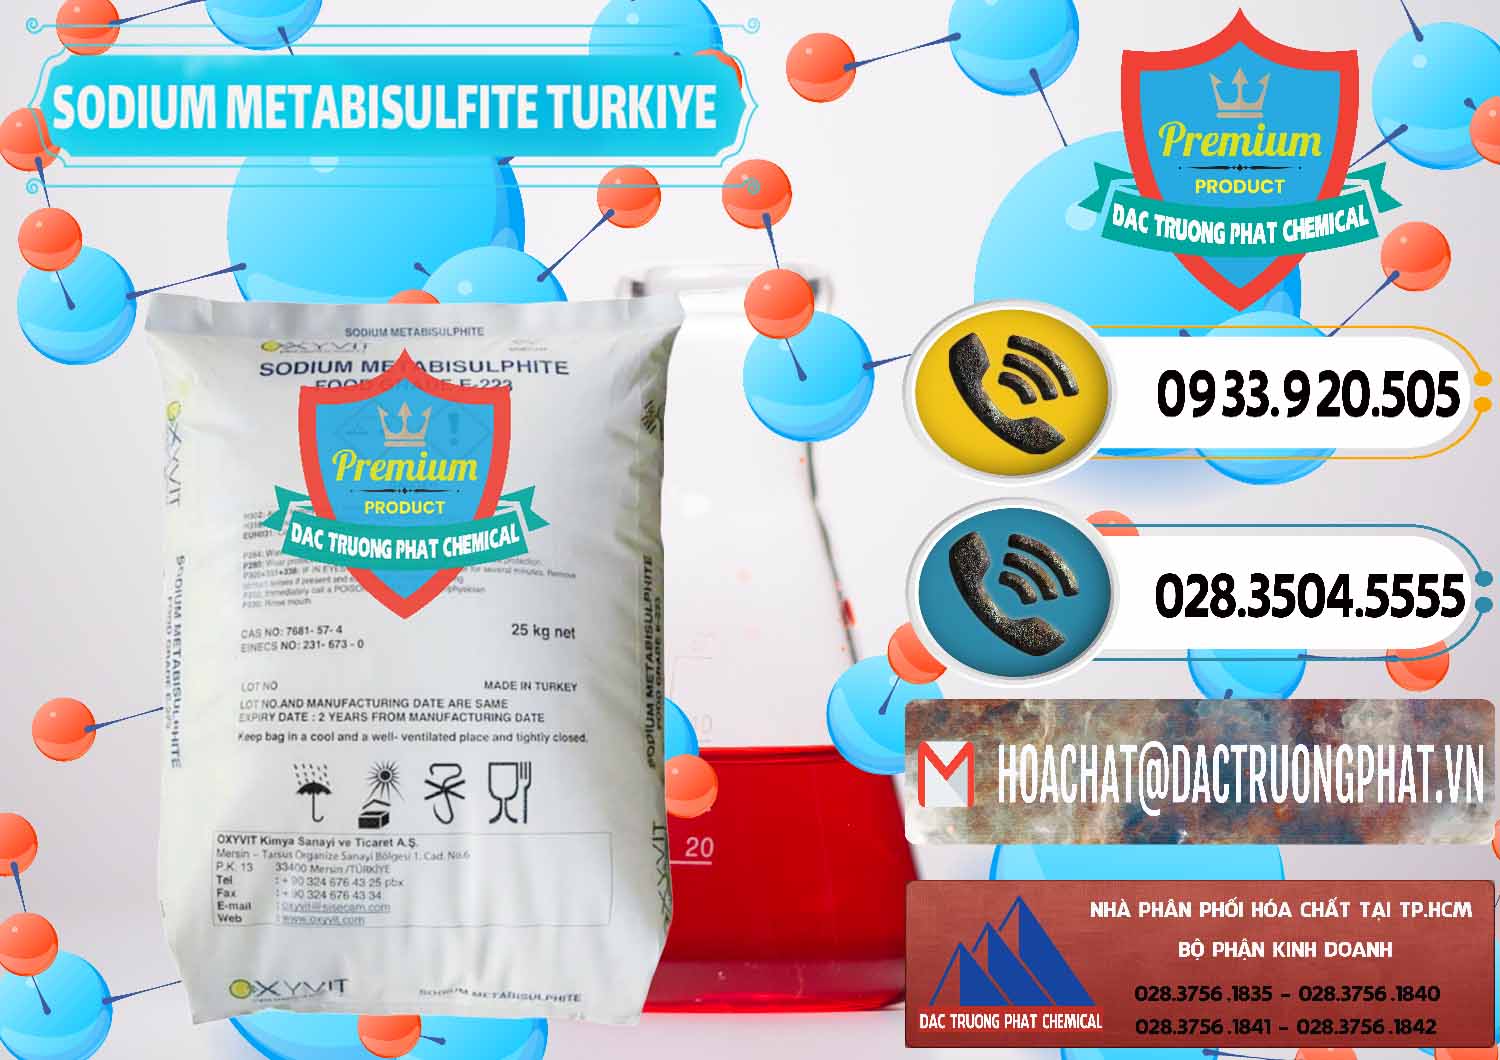 Nơi chuyên kinh doanh & bán Sodium Metabisulfite - NA2S2O5 Food Grade E-223 Thổ Nhĩ Kỳ Turkey - 0413 - Công ty phân phối ( cung cấp ) hóa chất tại TP.HCM - hoachatdetnhuom.vn